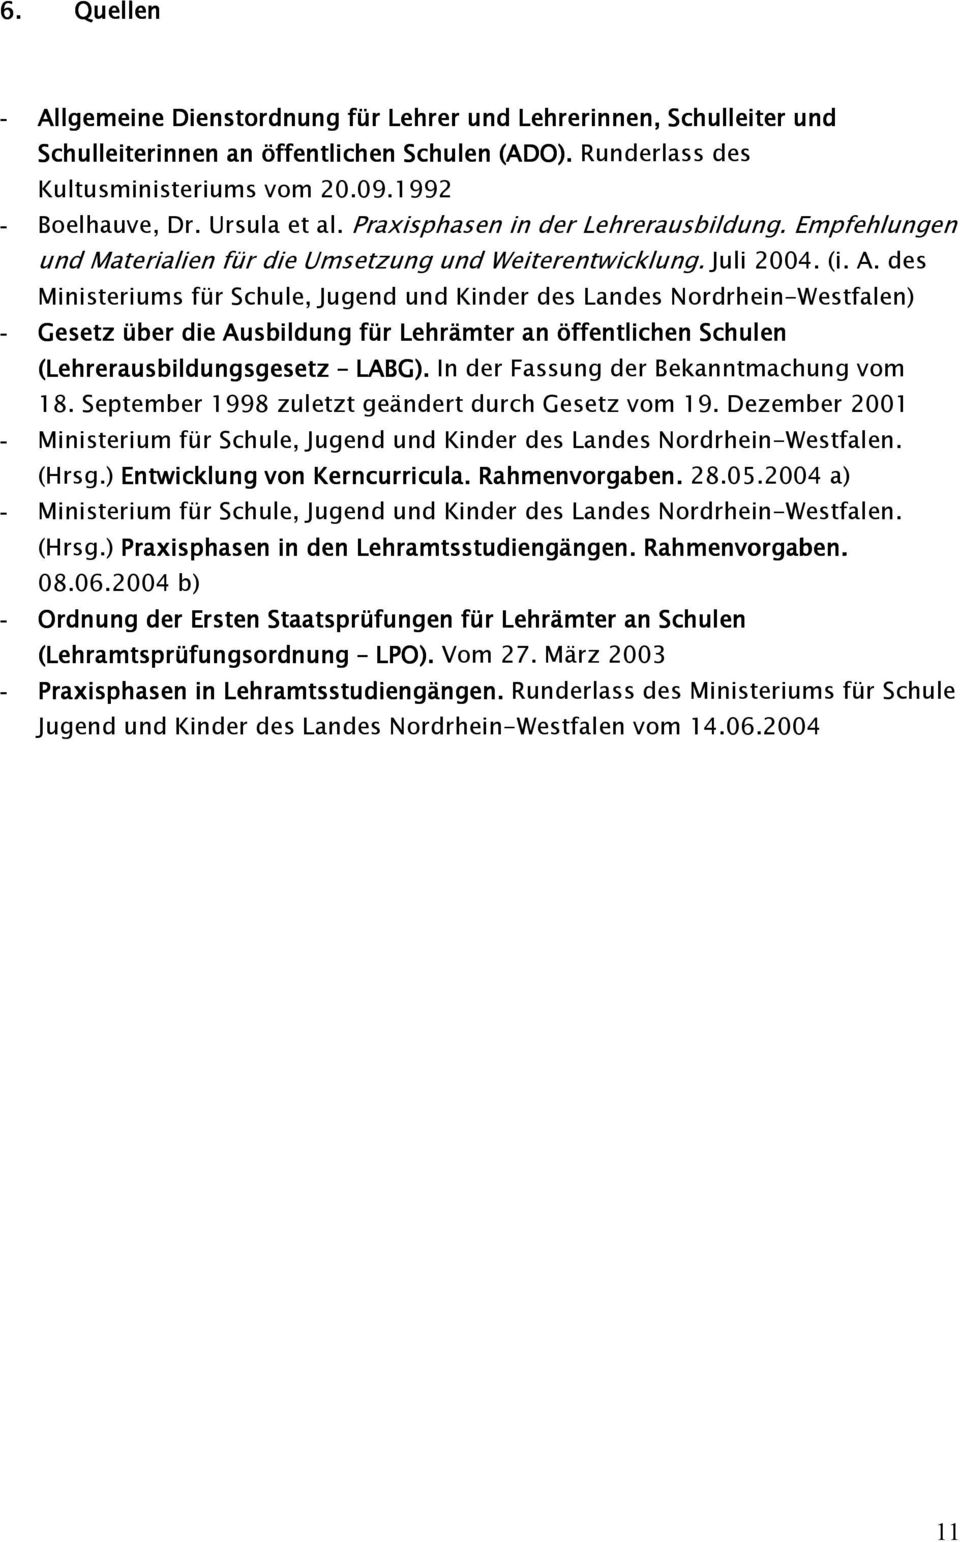 des Ministeriums für Schule, Jugend und Kinder des Landes Nordrhein-Westfalen) - Gesetz über die Ausbildung für Lehrämter an öffentlichen Schulen (Lehrerausbildungsgesetz LABG).